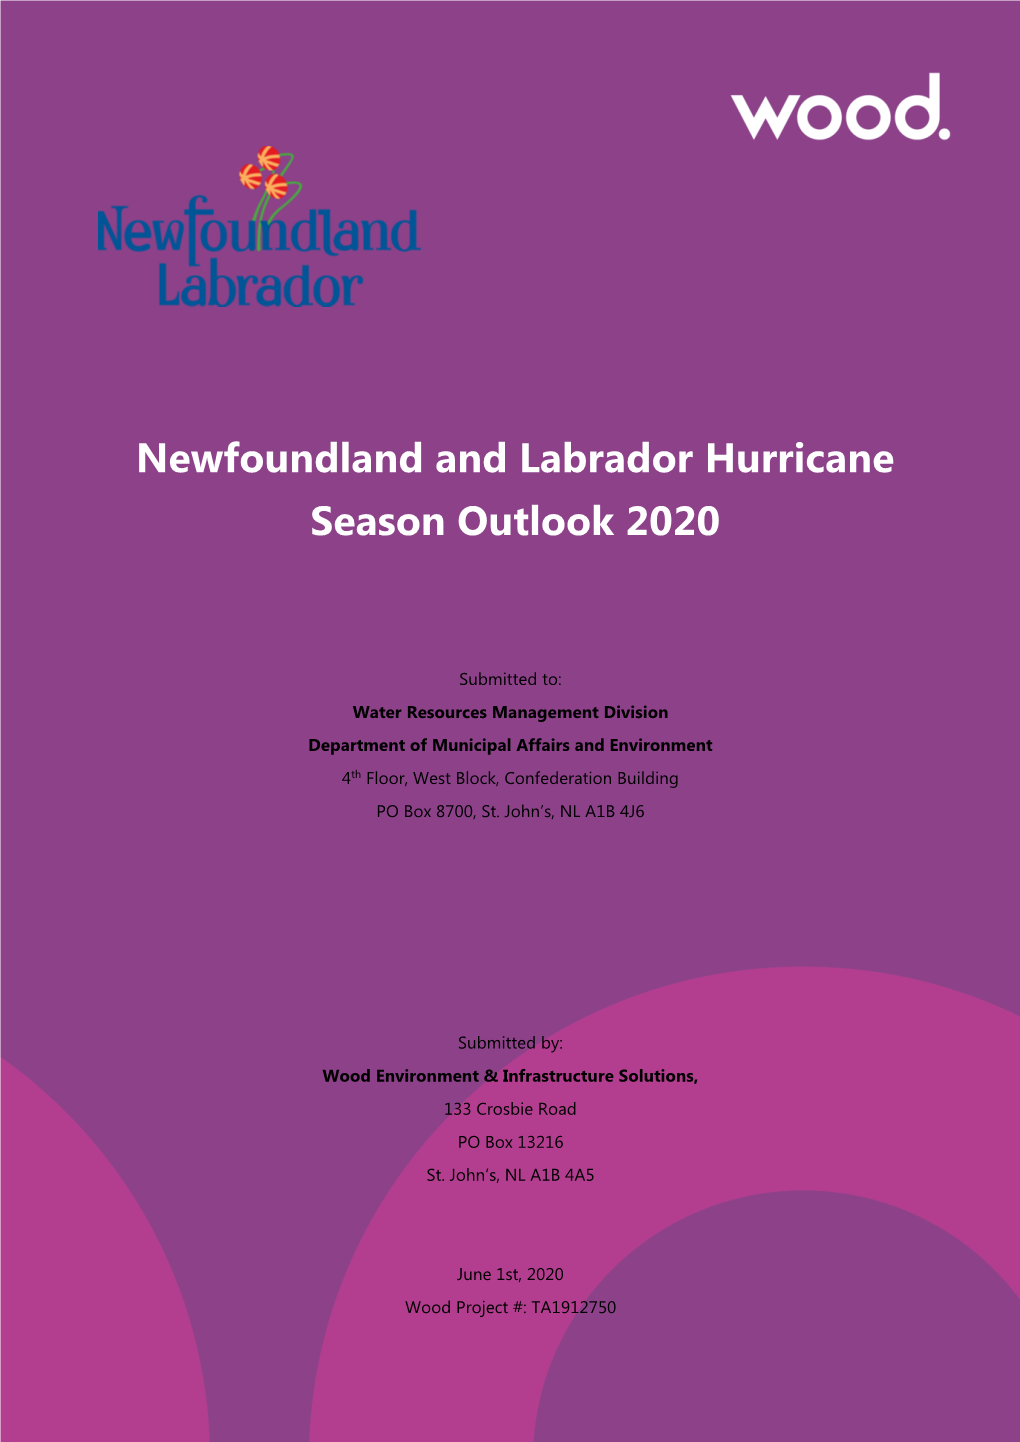 Newfoundland and Labrador Hurricane Season Outlook 2020